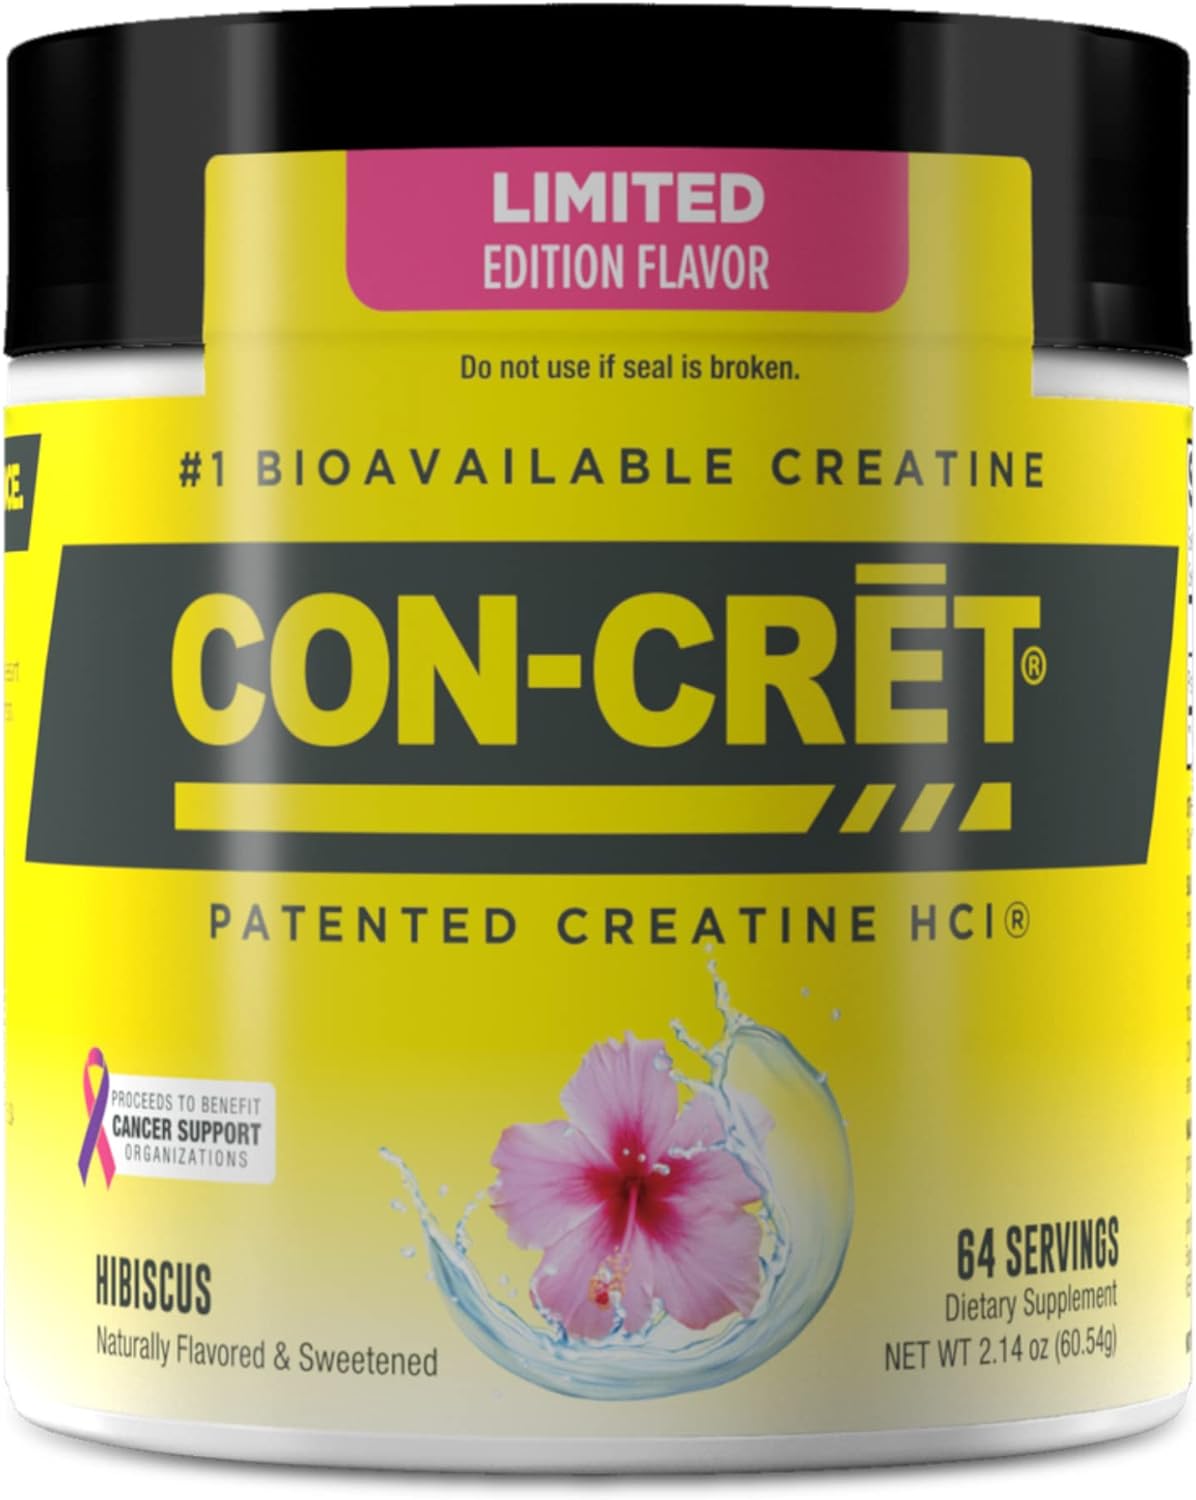 Promera Con-Cret Creatina HCI em Pó 64 doses (61.4 g)